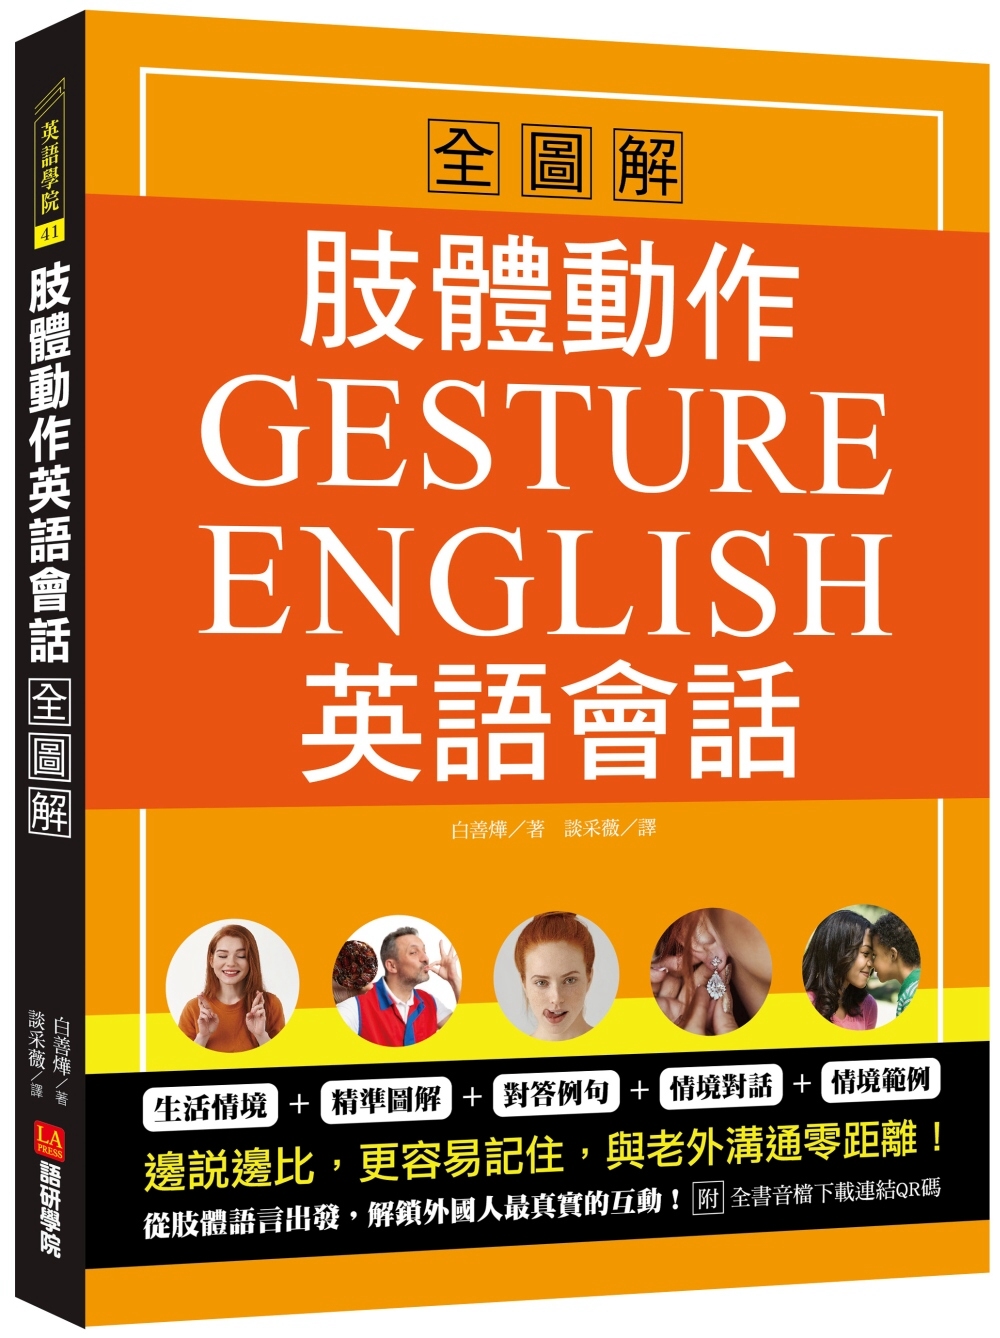 肢體動作英語會話全圖解：Gesture English！邊說邊比更容易記住，與老外溝通零距離（附全書音檔下載連結QR碼）